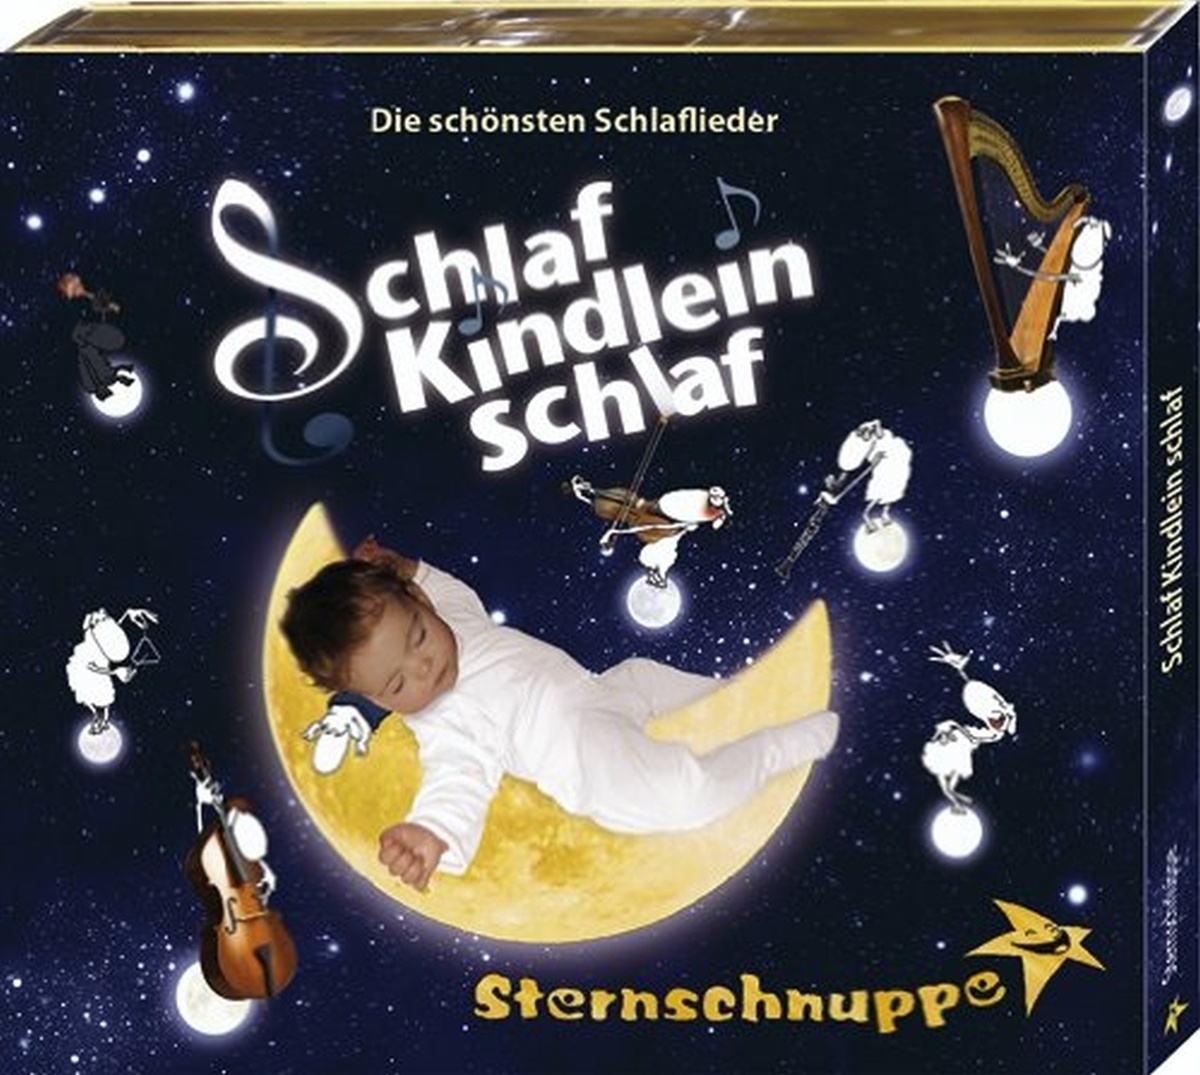 Schlaf Kindlein Schlaf - die schönsten Schlaflieder - Sternschnuppe. (CD)